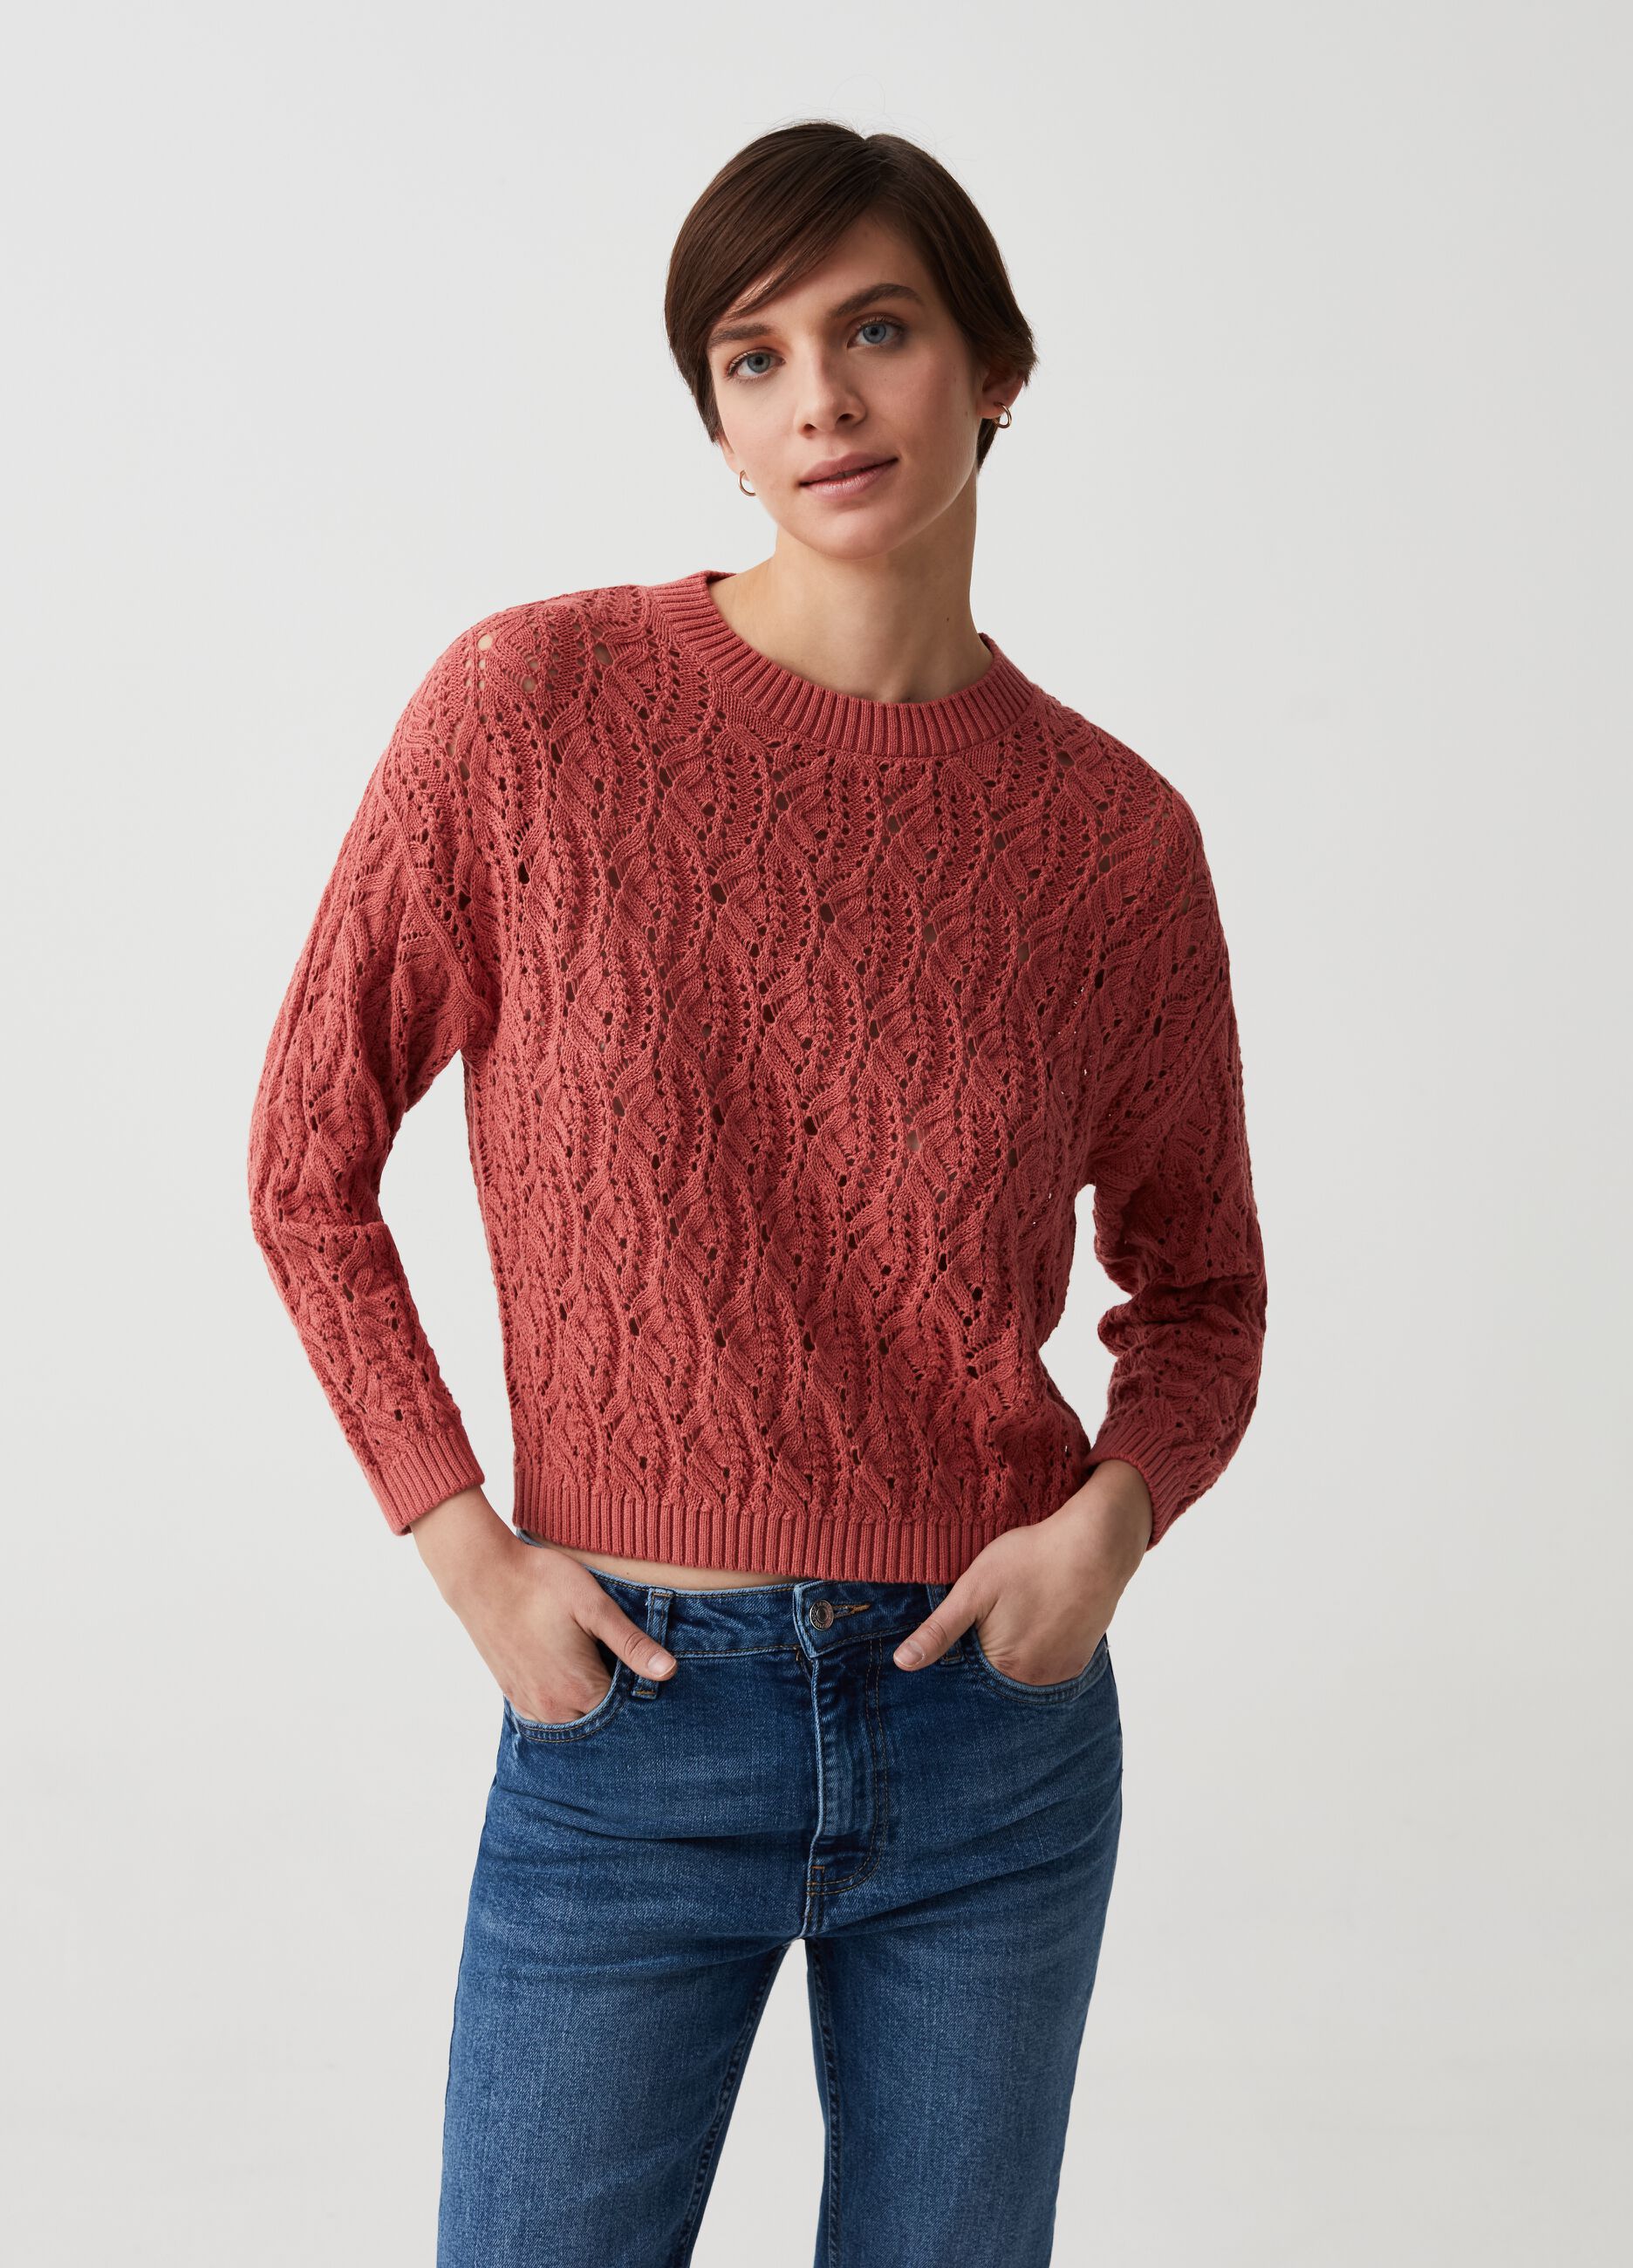 Crochet pullover with openwork design